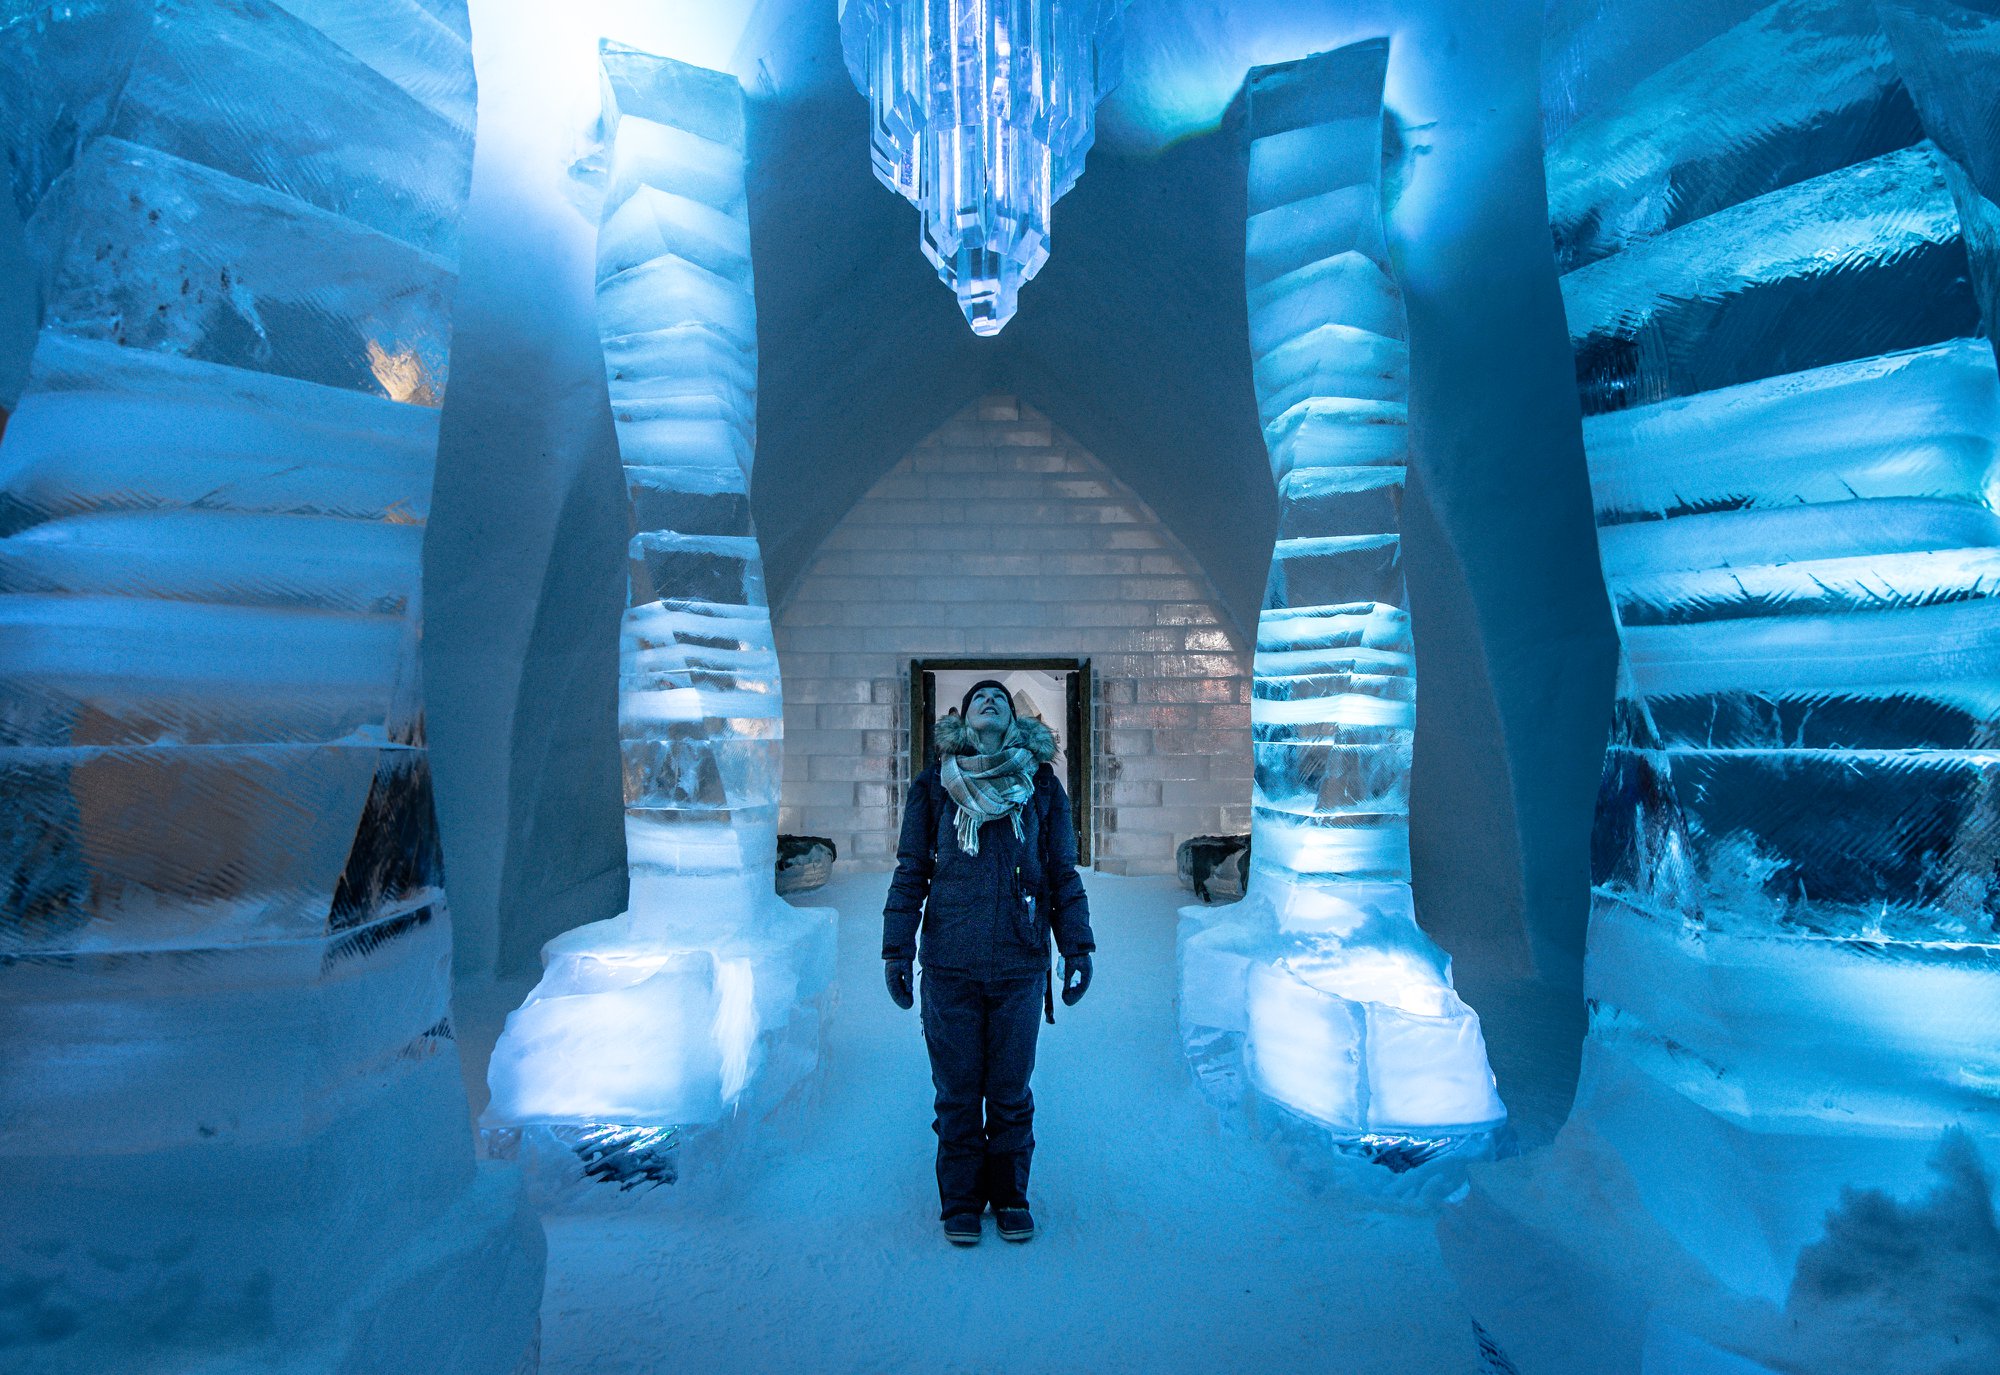 Включи ледяной страх. Hotel de glace, Квебек, Канада. Icehotel Швеция Юккасъярви. Ледяной отель в Канаде Квебек. Отель де Глейс.